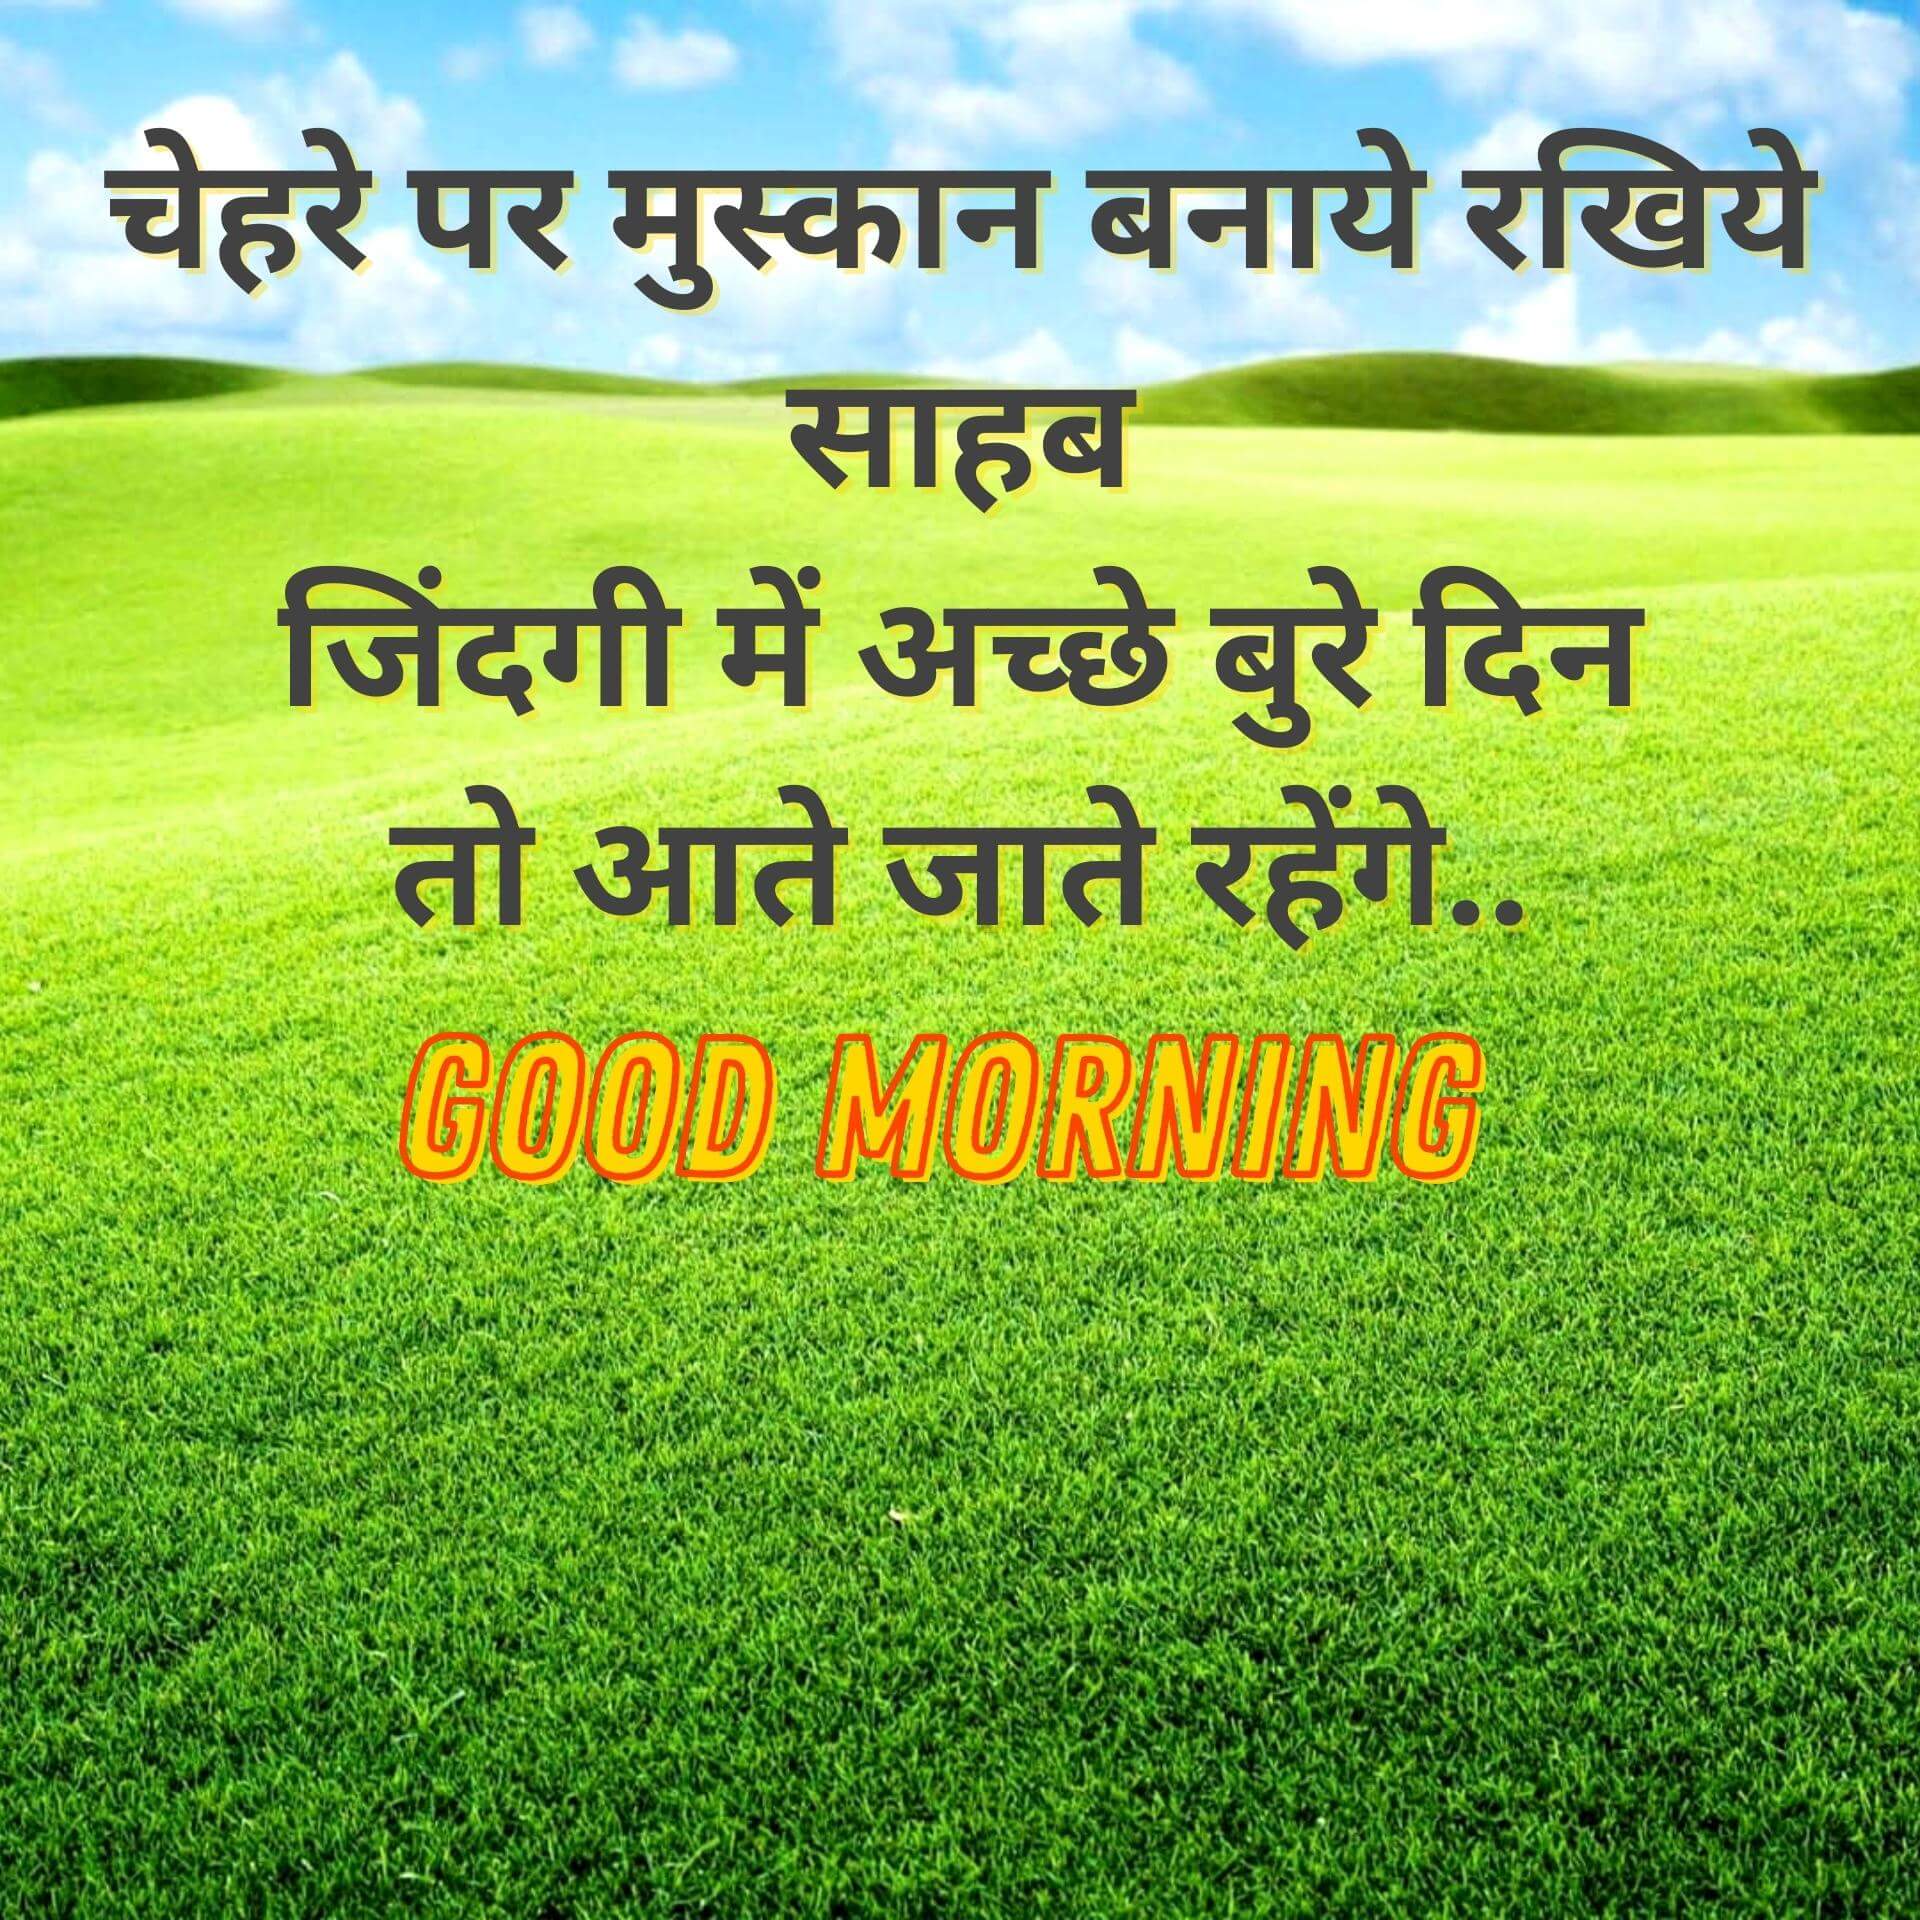 Good Morning Wallpaper Photo In Hindi